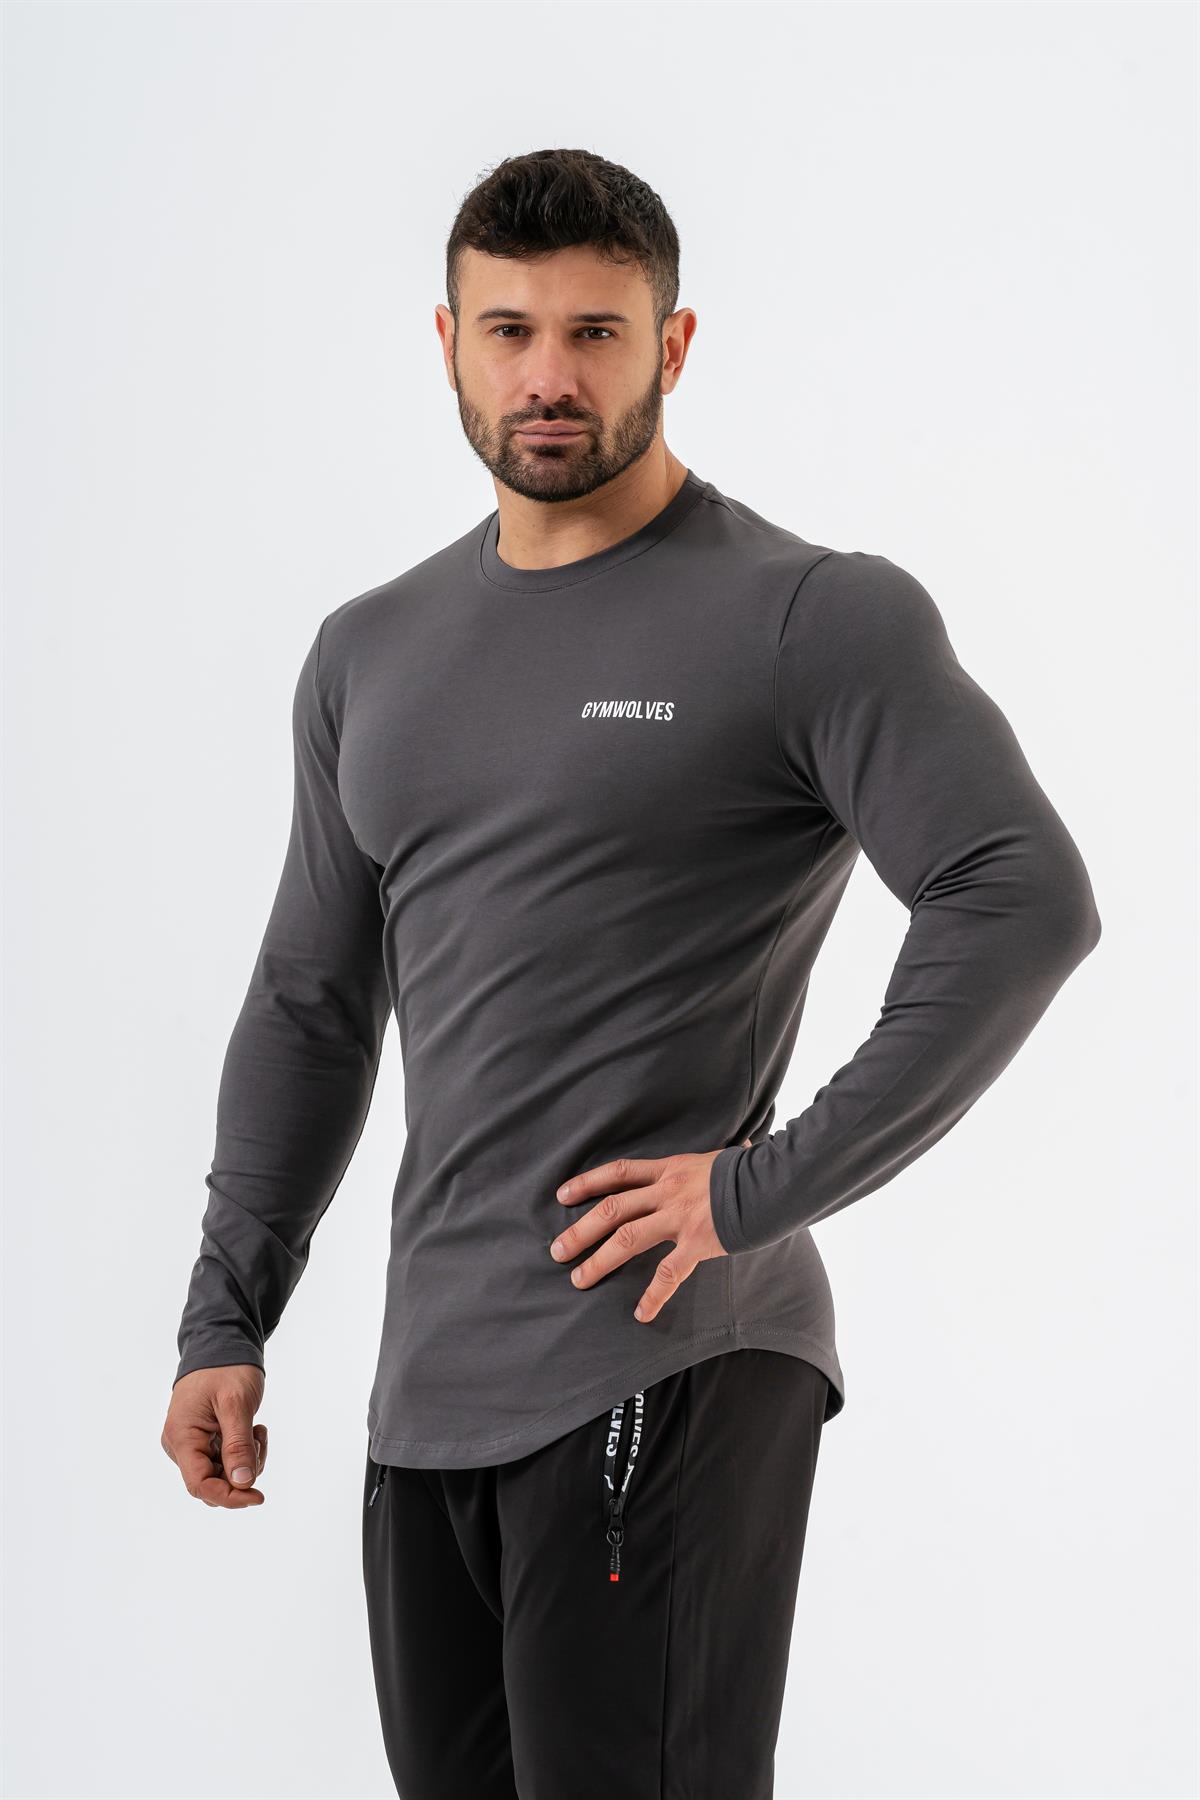 Gymwolves Erkek Spor Body | Füme | Uzun Kollu Spor T-Shirt | Basic Serisi